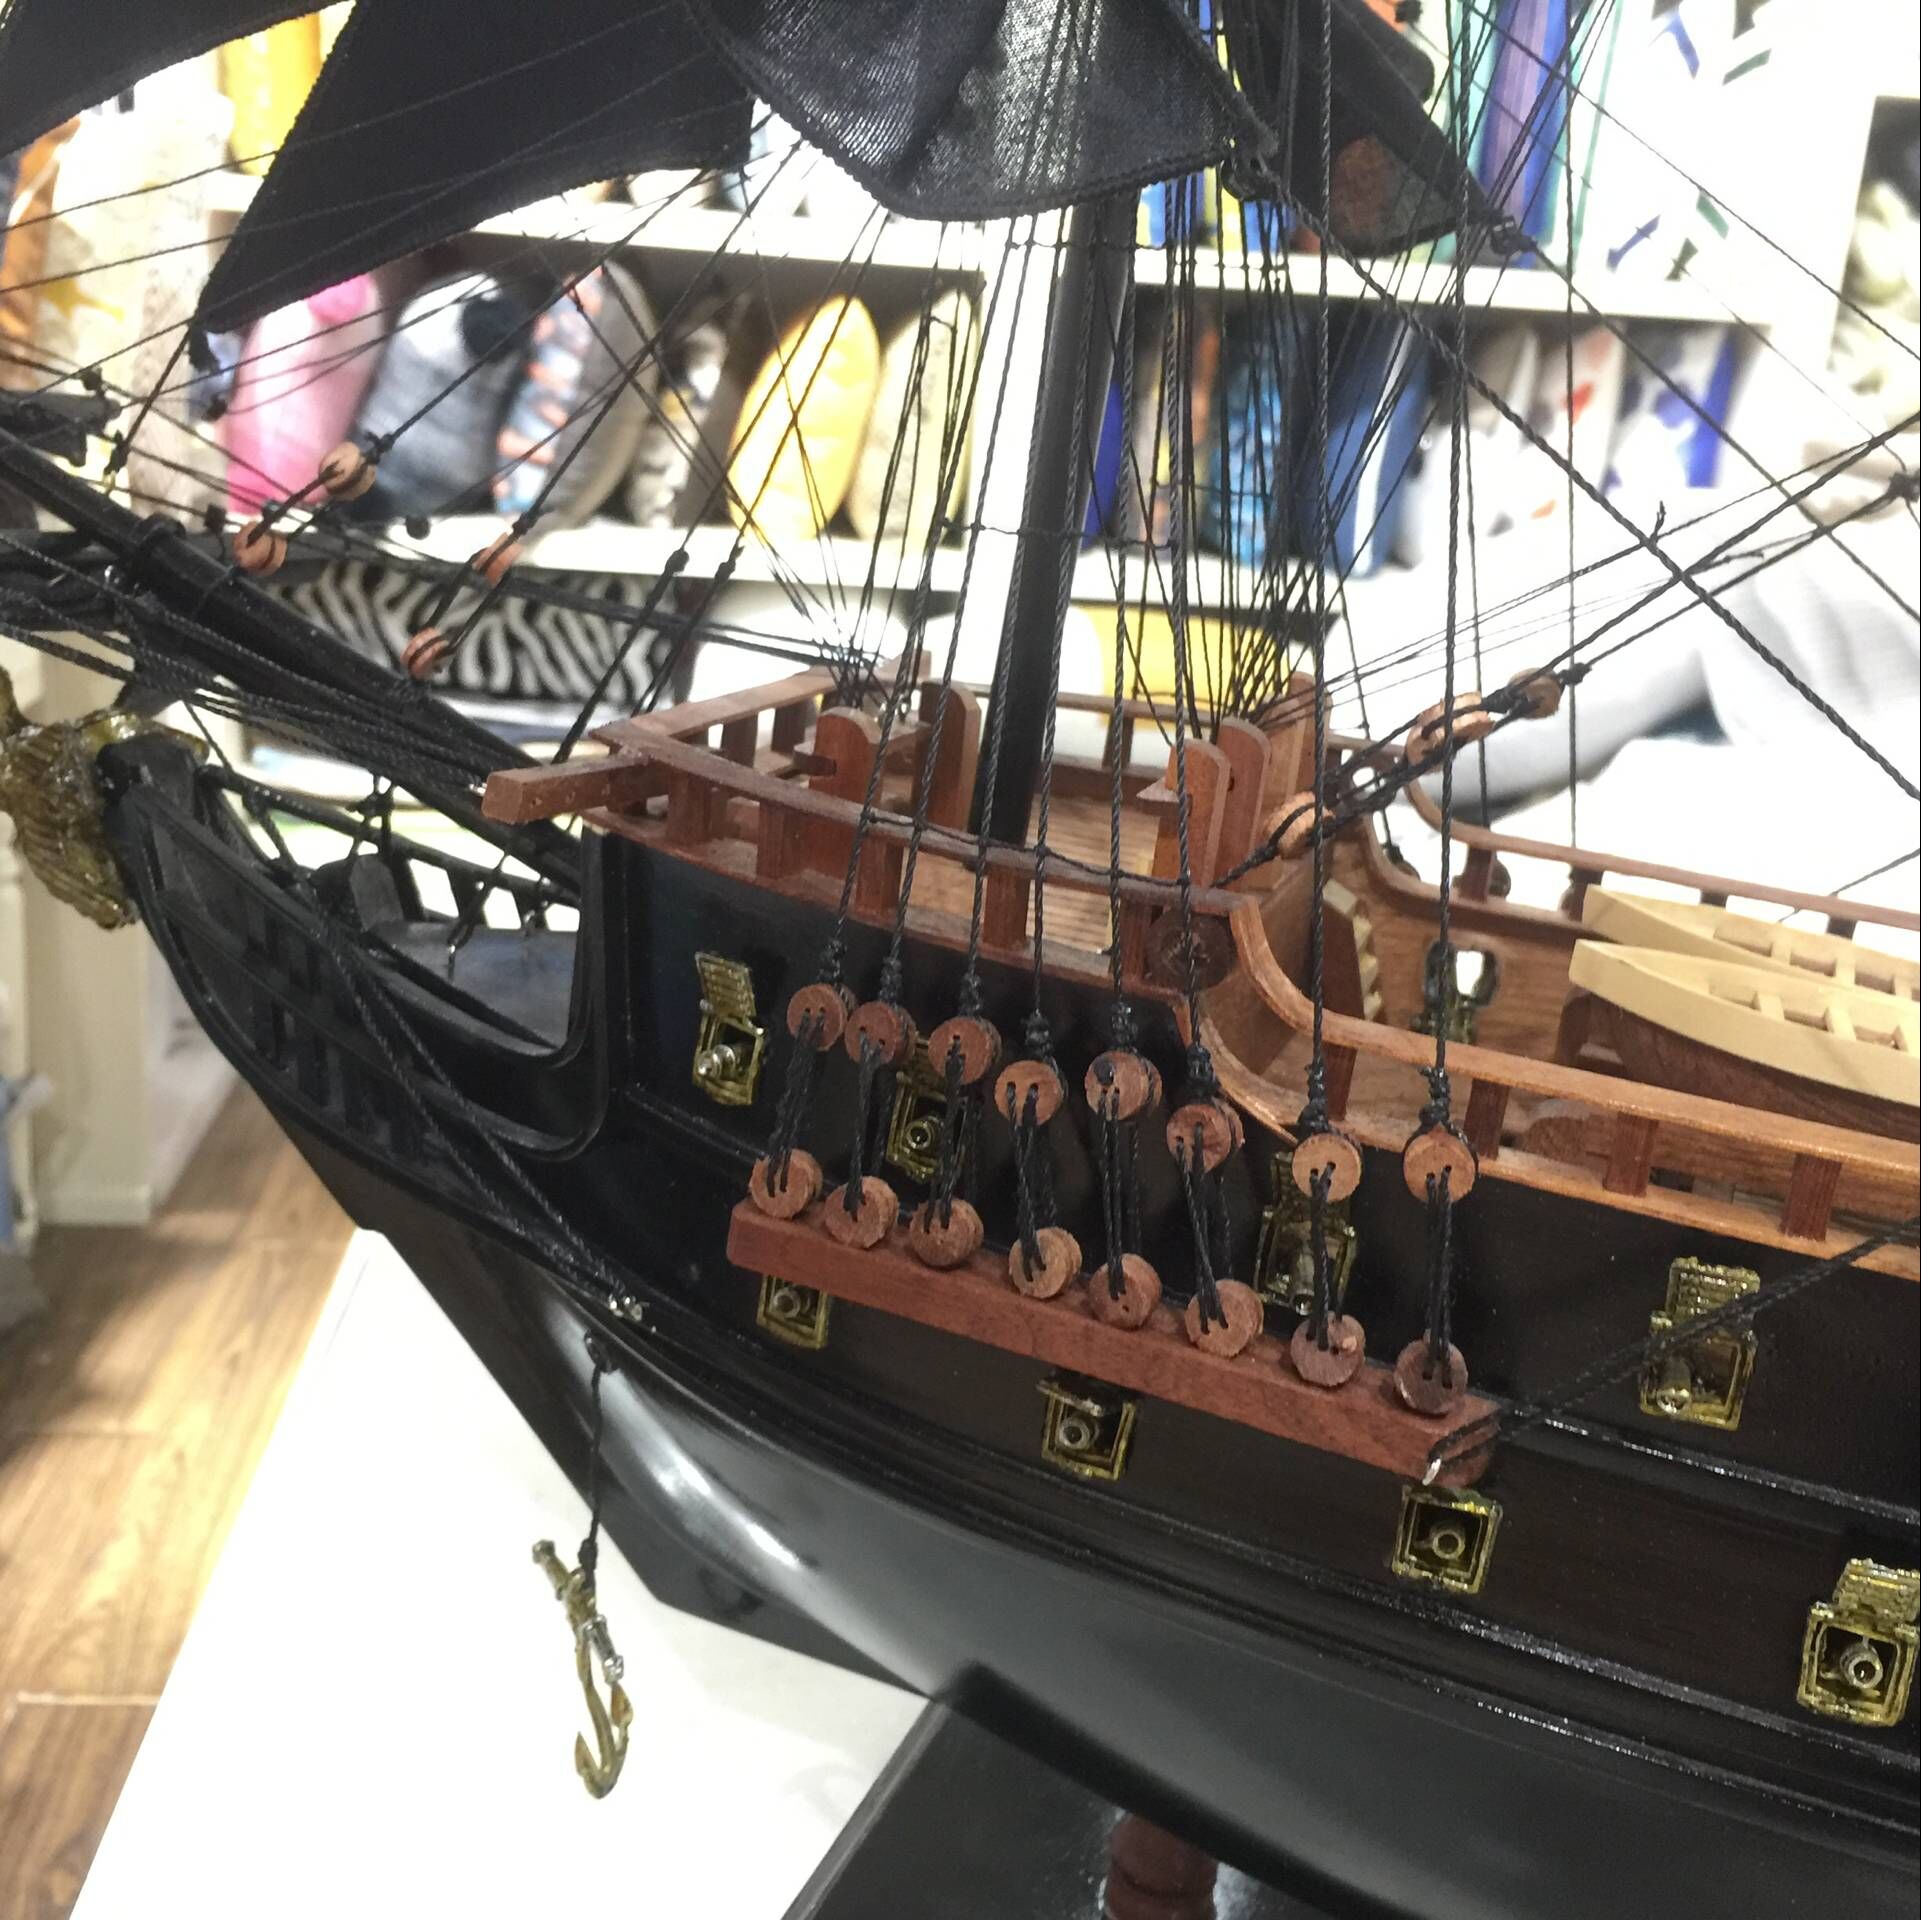 黑珍珠号加勒比海盗船模型工艺船仿真木船实木质帆船复古摆件礼品